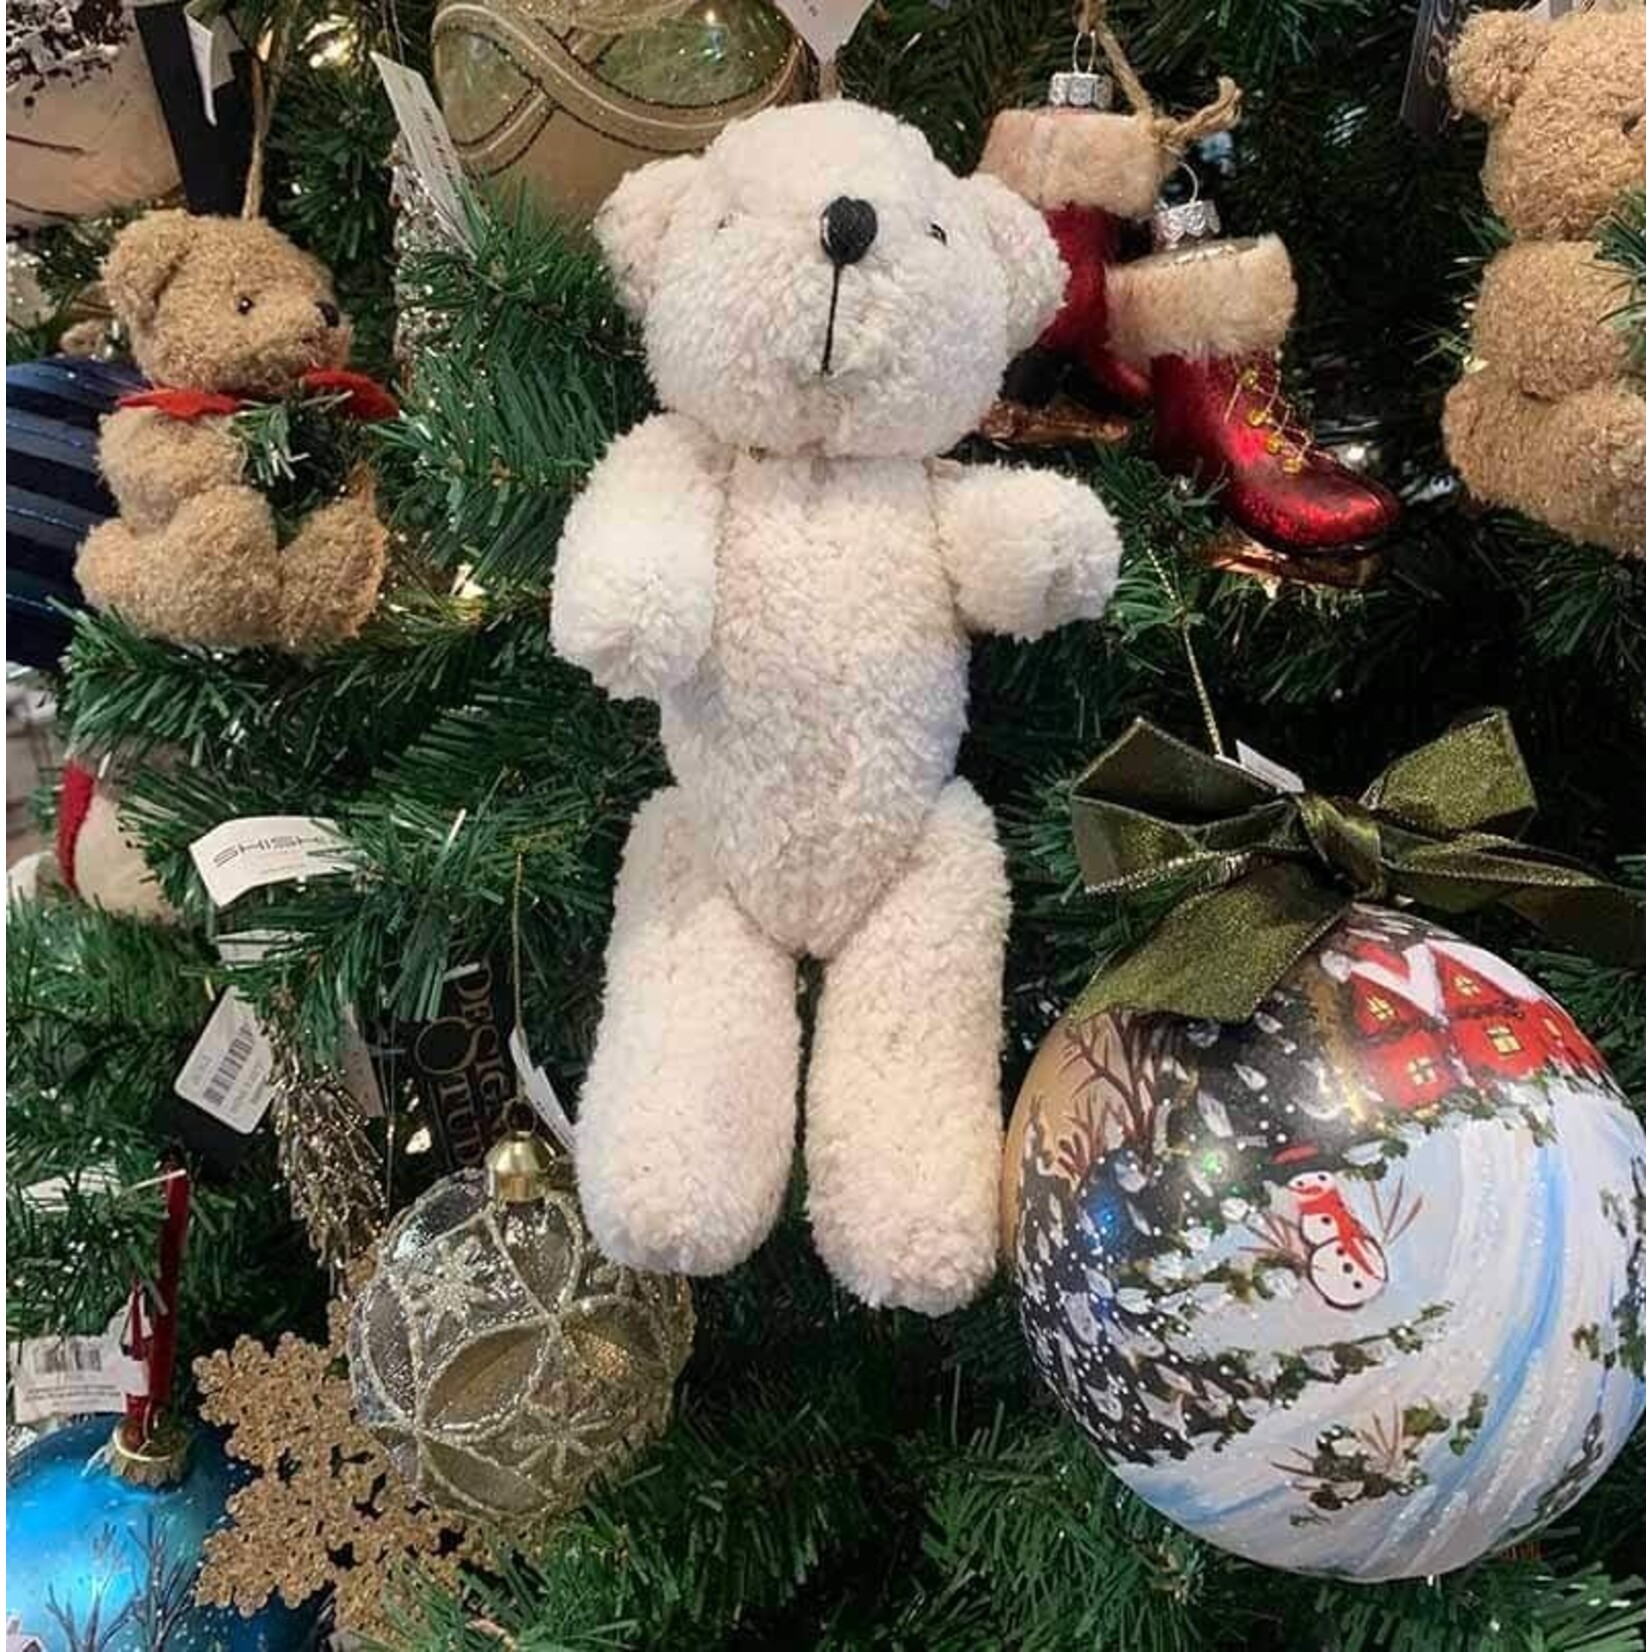 Shishi LLC White Teddy Bear Ornament